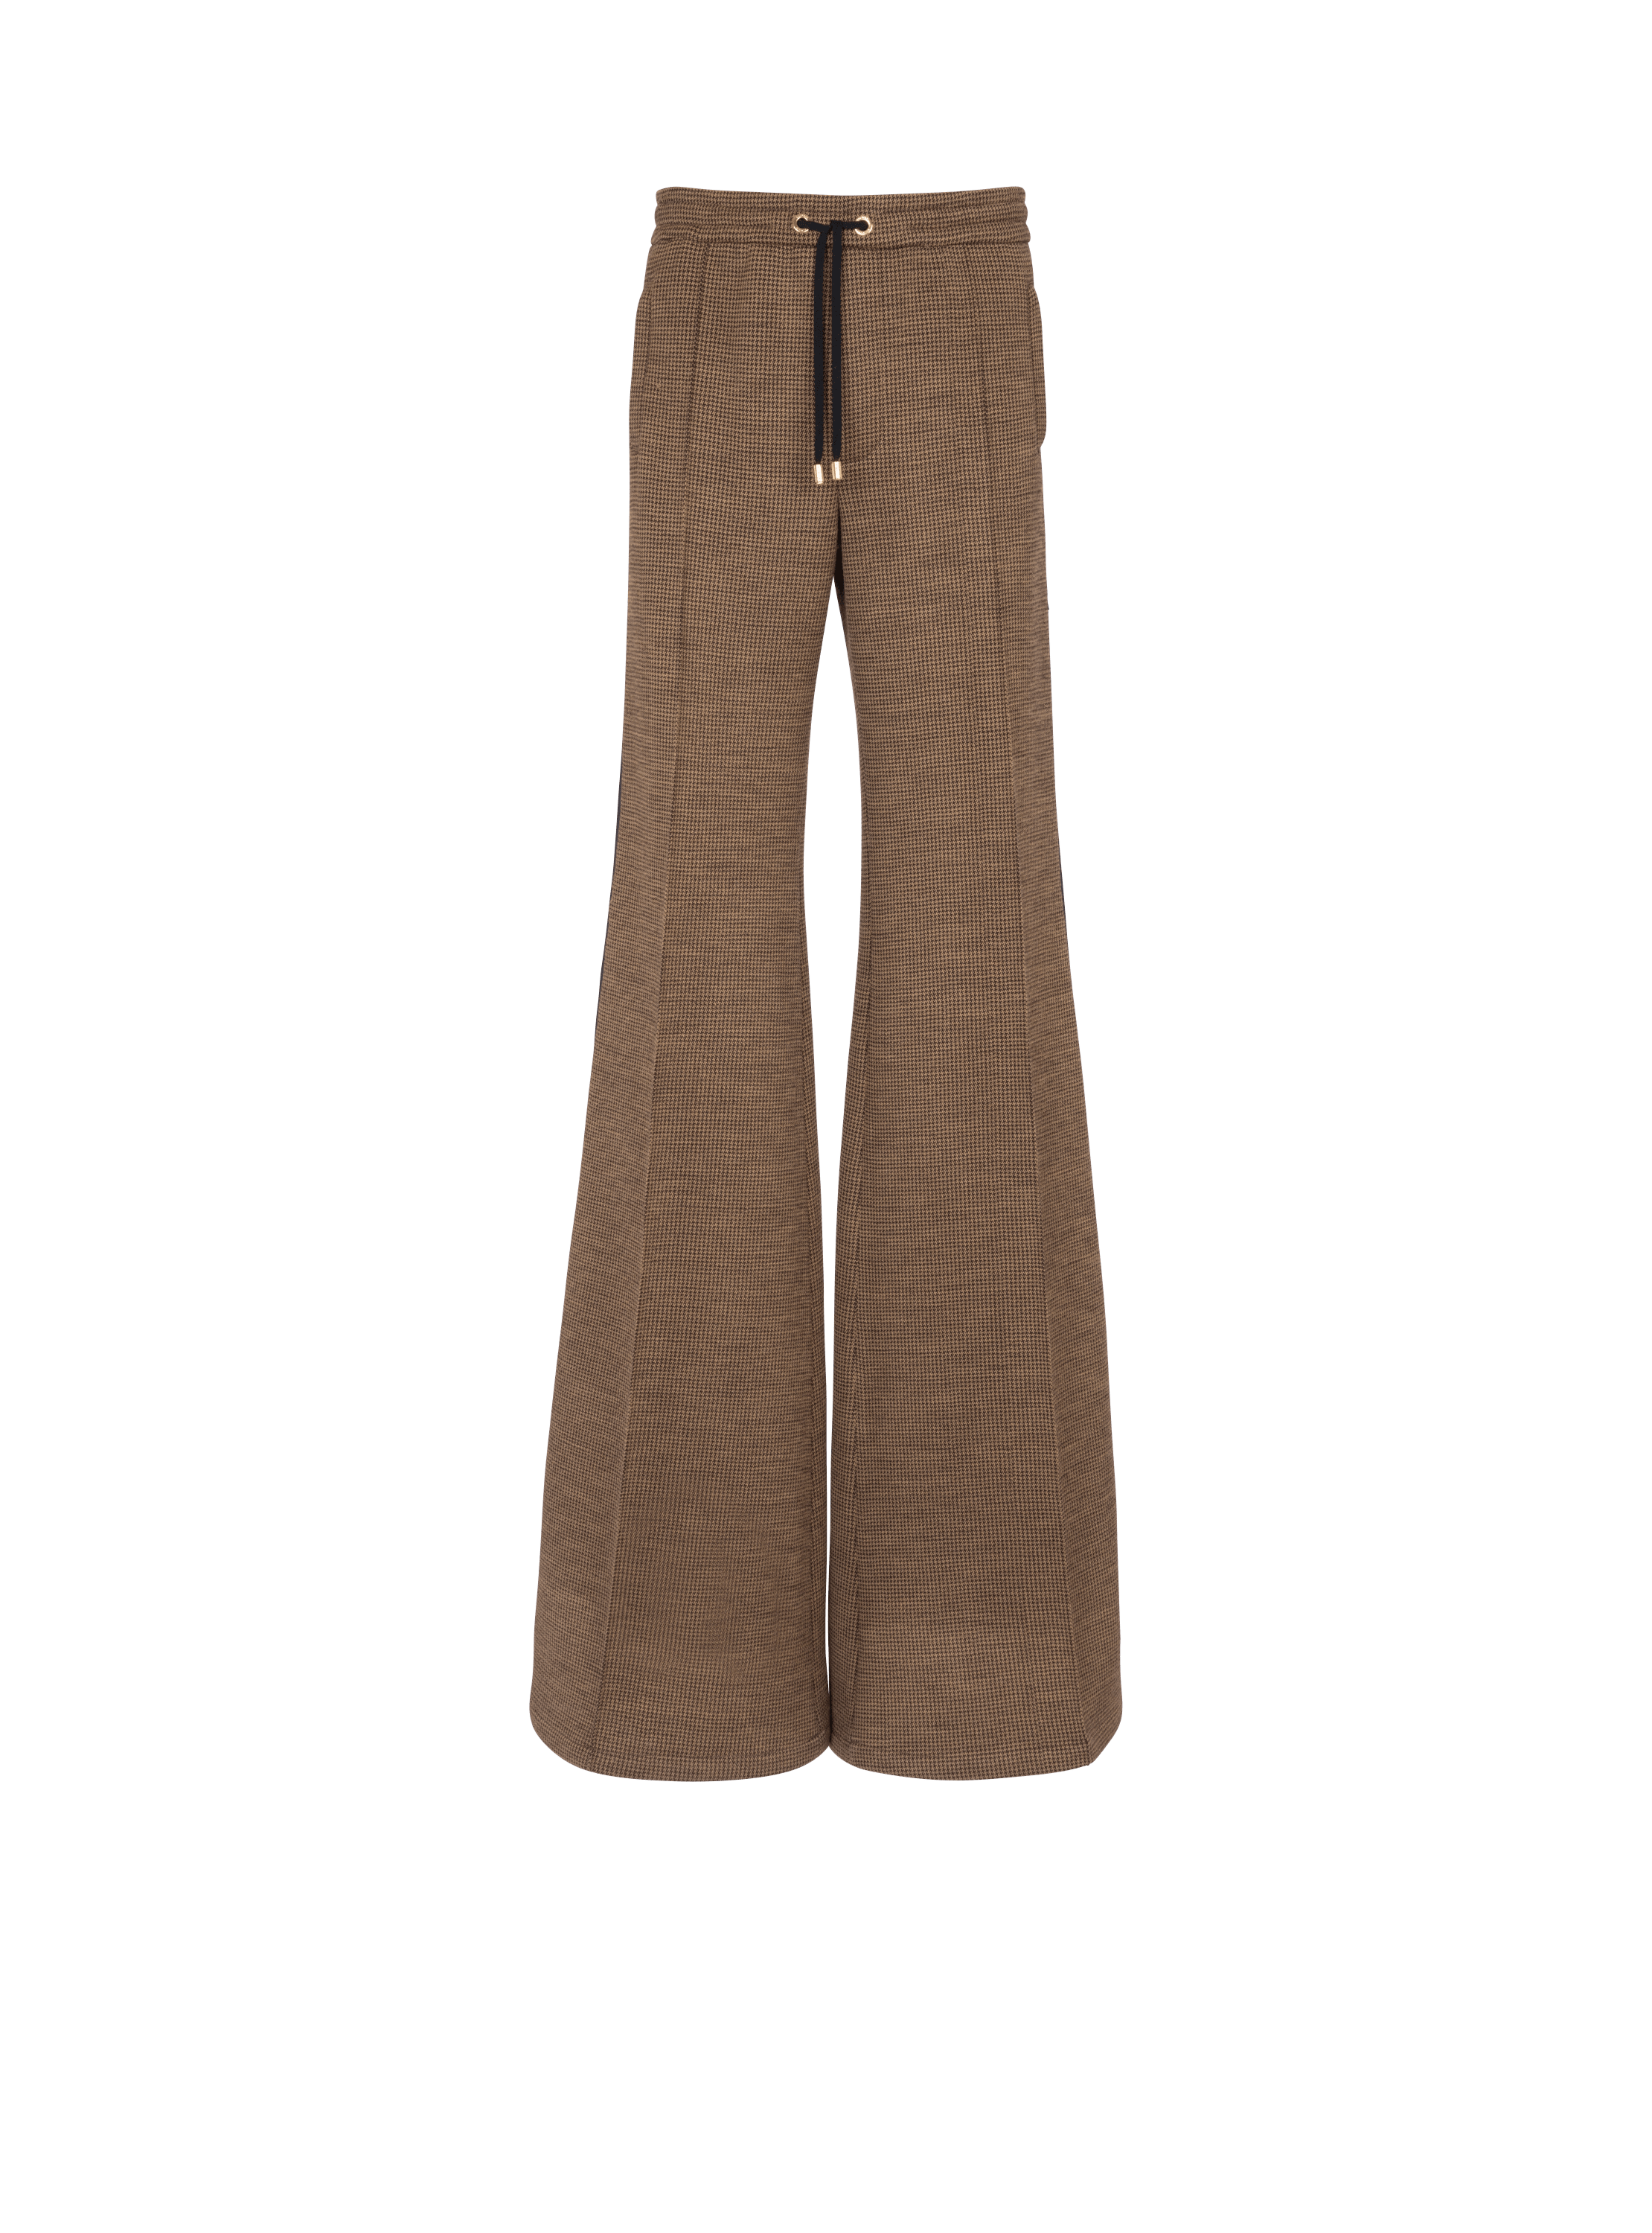 Pantalon casual en jacquard pied-de-poule, marron, hi-res